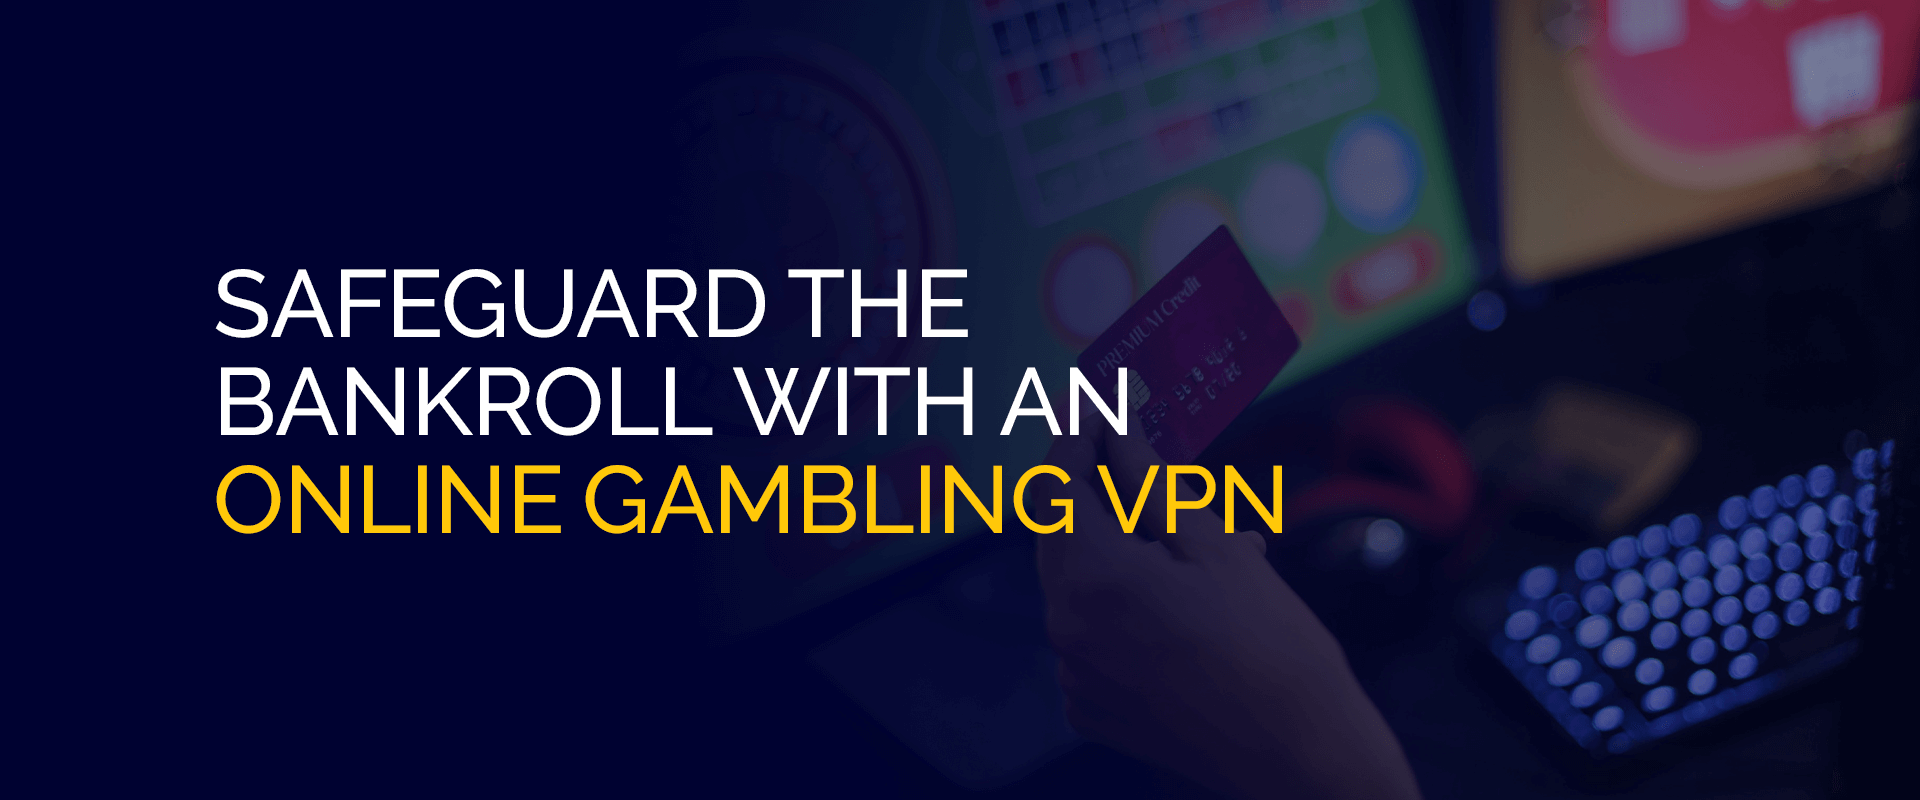 قم بحماية رصيدك باستخدام في بي ان  للمقامرة عبر الإنترنت